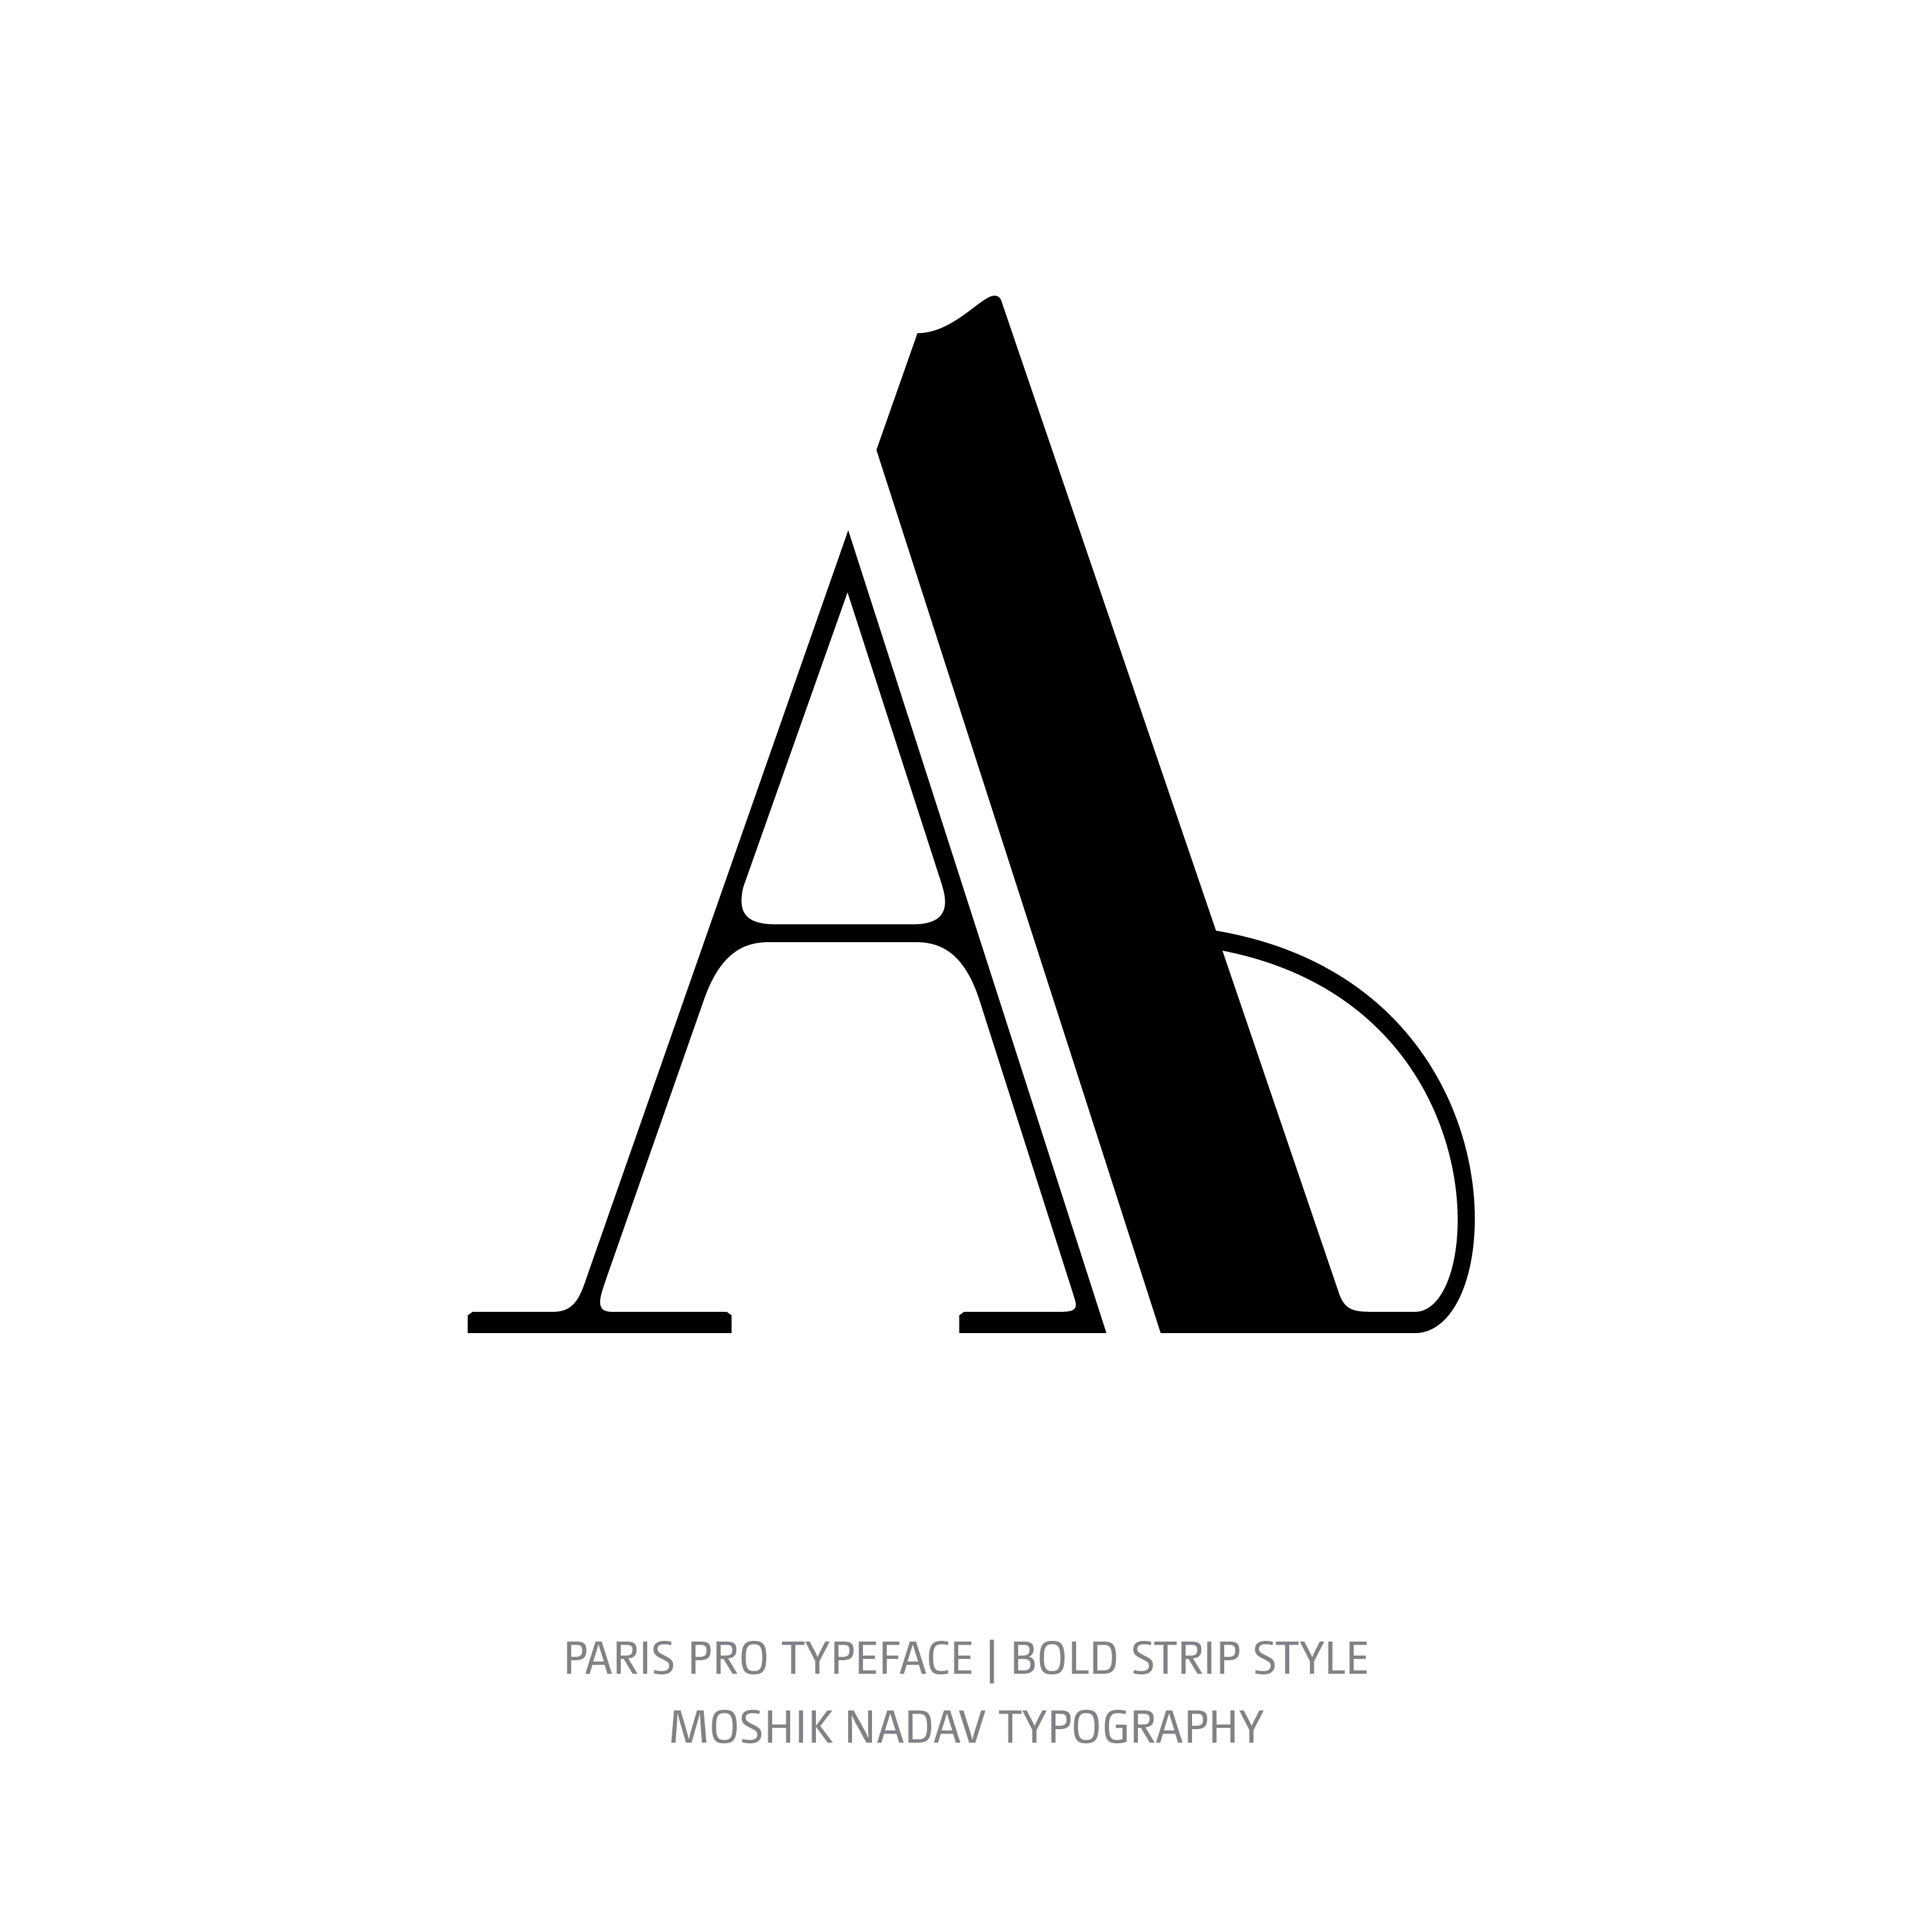 Paris Pro Typeface Bold Strip A alt